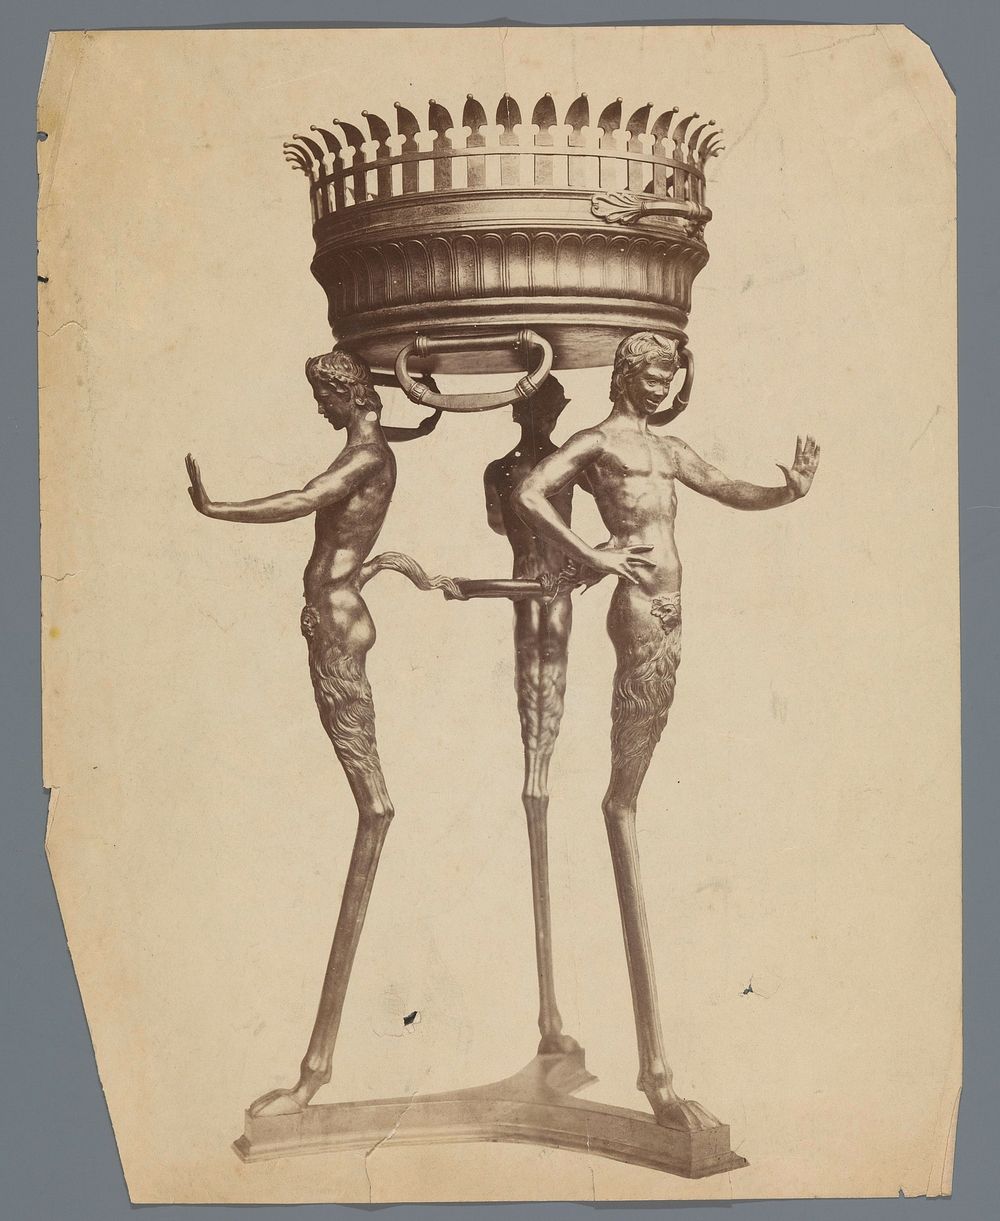 Vuurkorf op een onderstel in de vorm van saters (c. 1875 - c. 1900) by anonymous